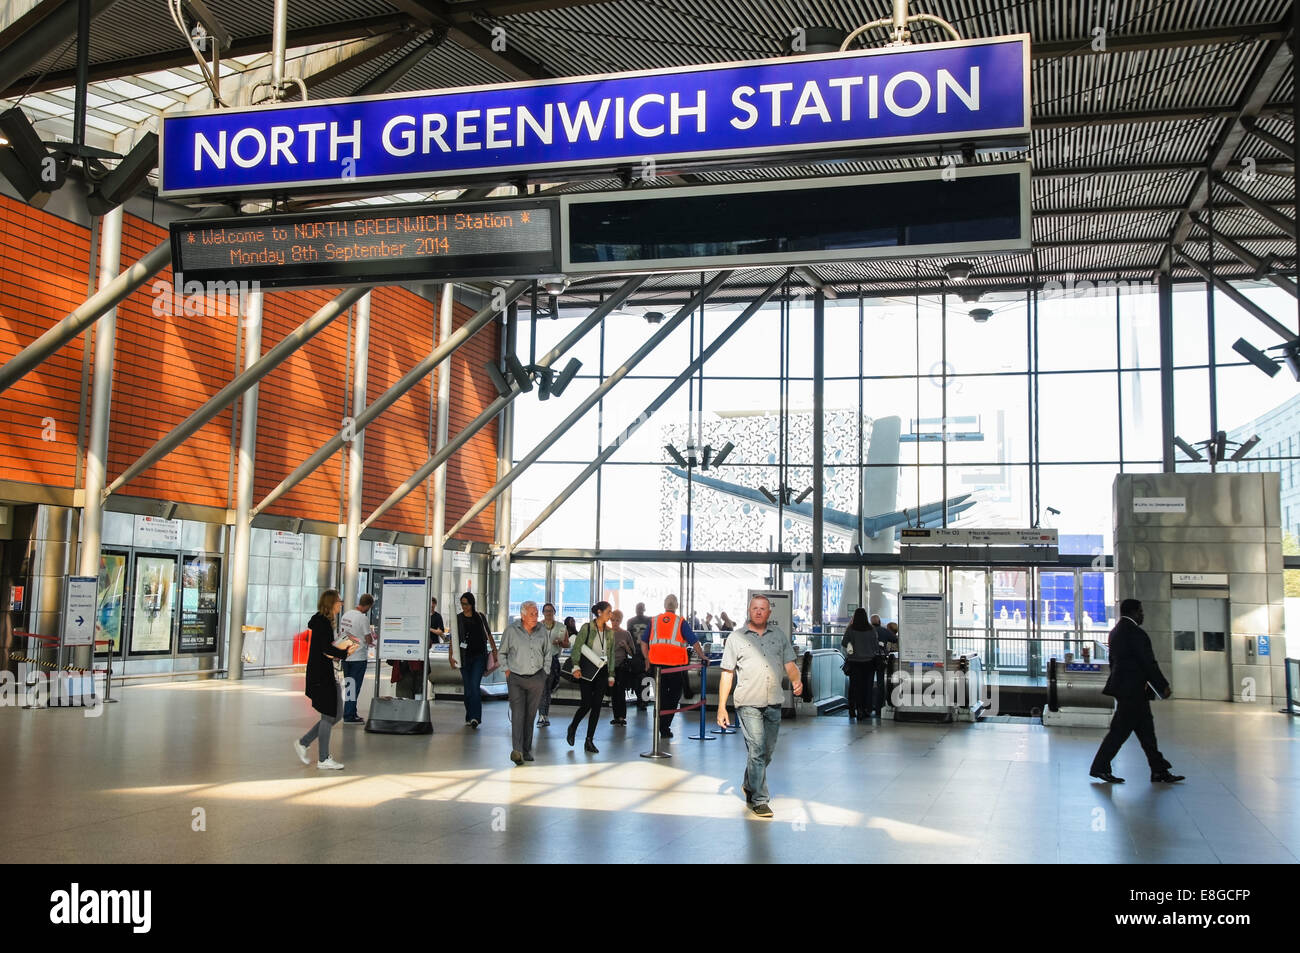 La station de métro North Greenwich Londres Angleterre Royaume-Uni UK Banque D'Images